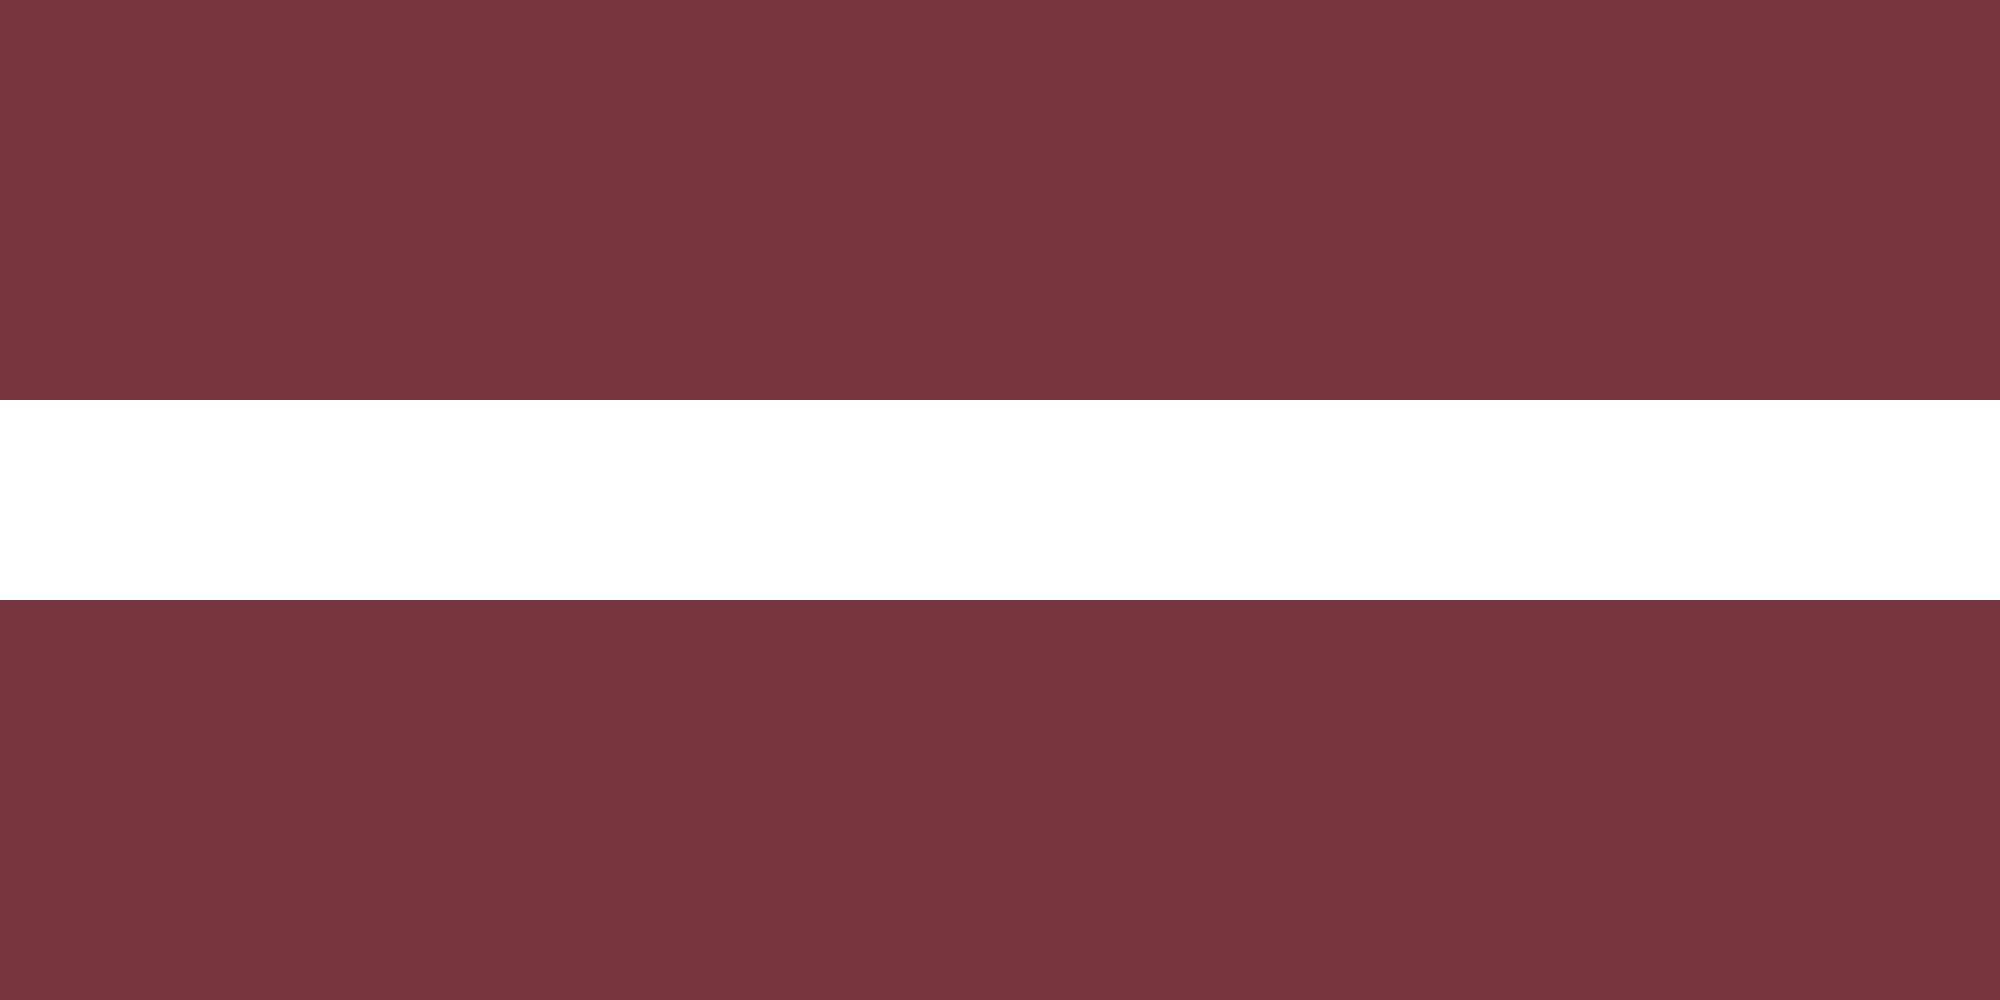 ÐÐ°ÑÑÐ¸Ð½ÐºÐ¸ Ð¿Ð¾ Ð·Ð°Ð¿ÑÐ¾ÑÑ Latvia flag